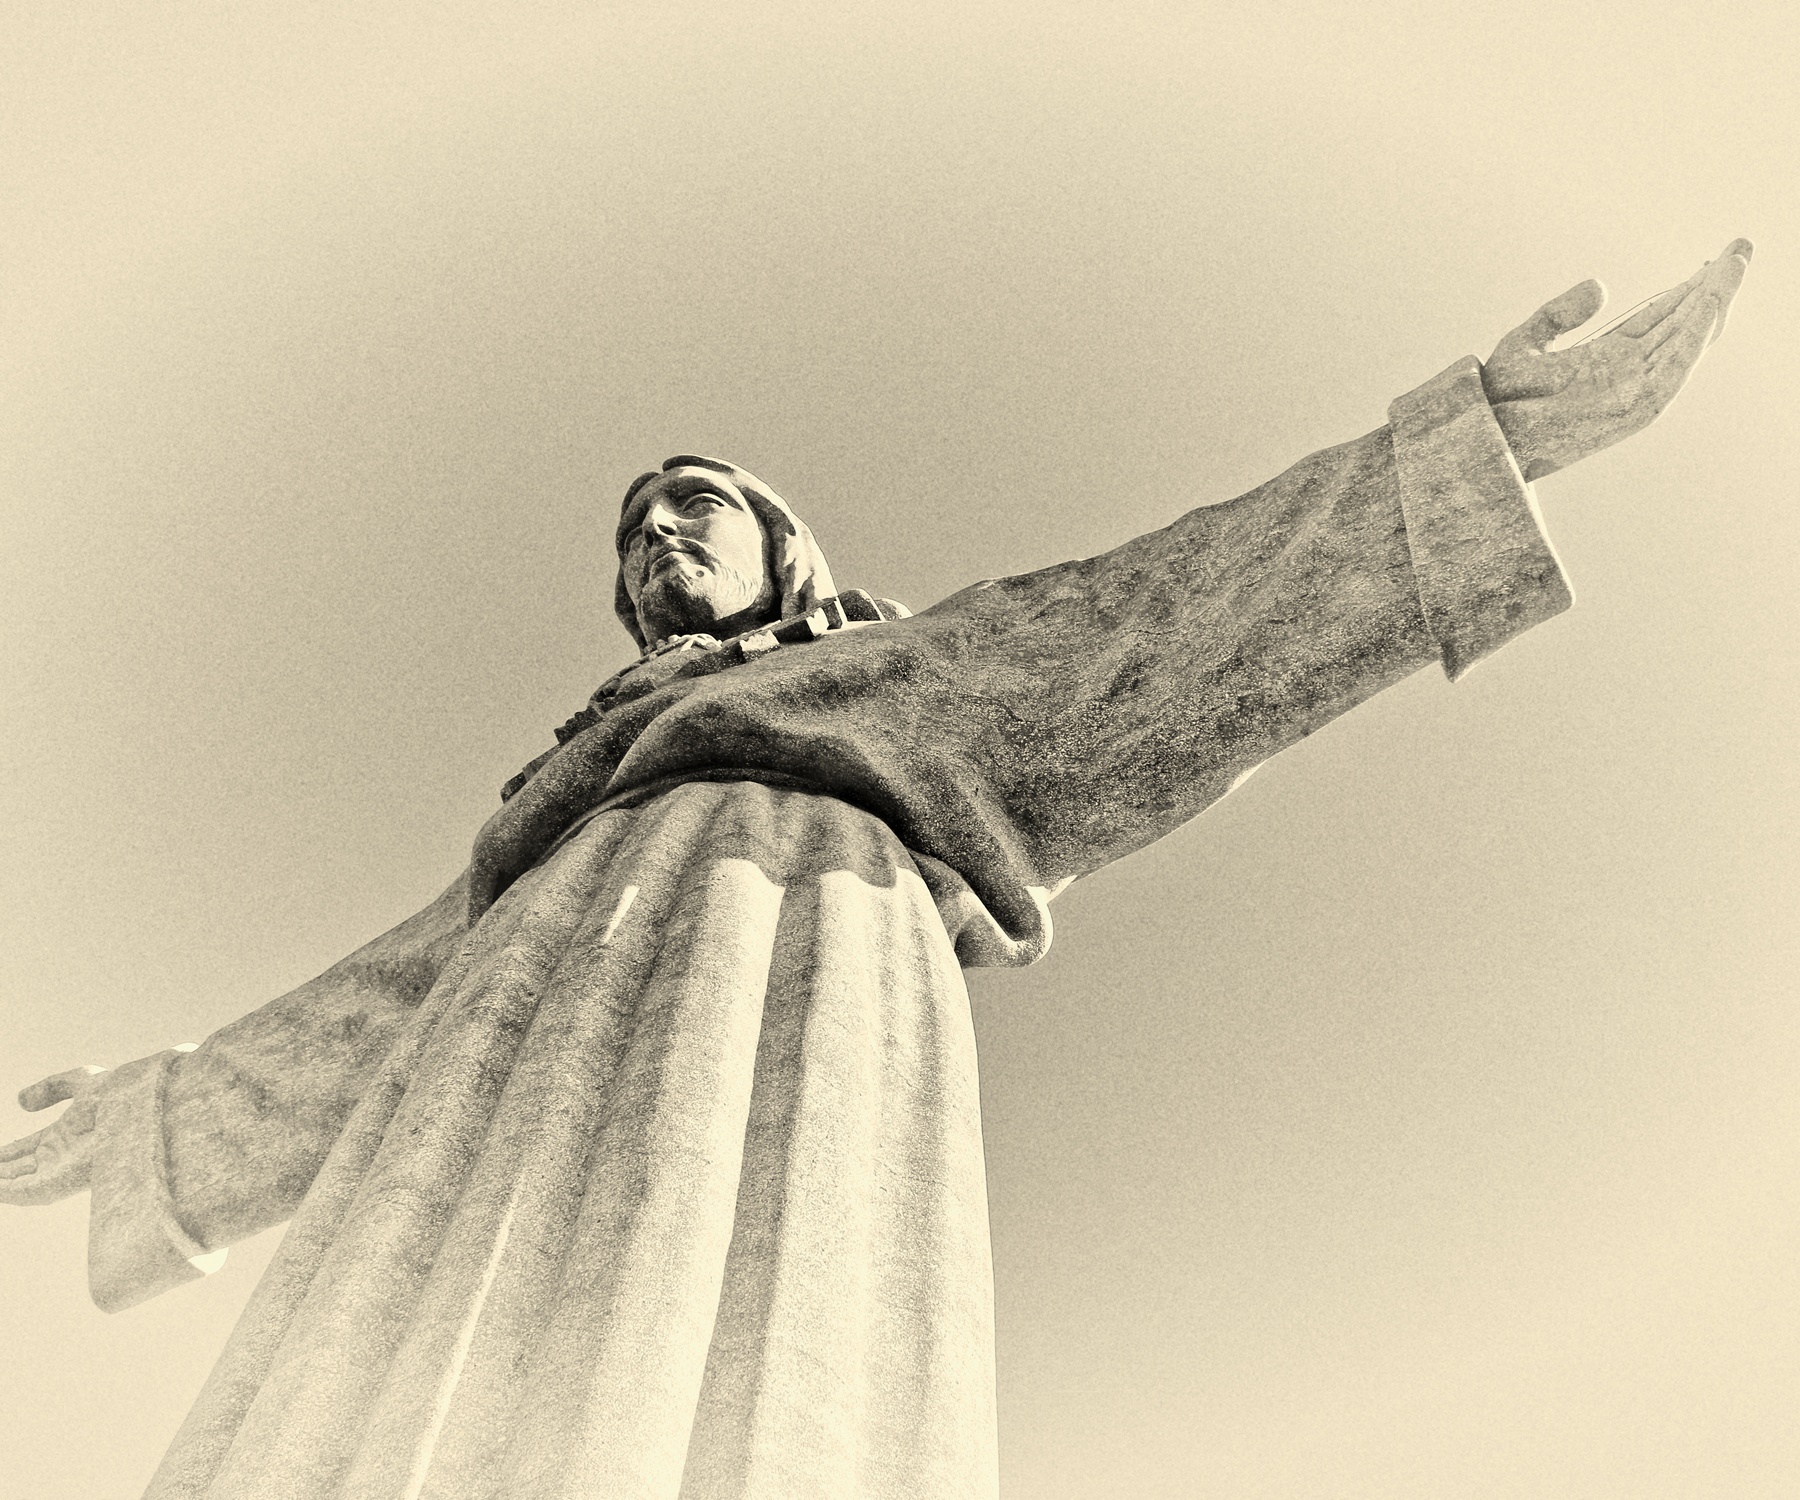 Cristo Rei - eine Christus-Statue in Almada südlich von Lissabon in Portugal, HansePhotoStralsund, Fraede, Portugal, Lissabon, Lisboa, Almada, Tejo, Jesus, Christus, Cristo Rej, Statue, Capela de Nossa Senhora da Paz, Urlaub, Tourismus